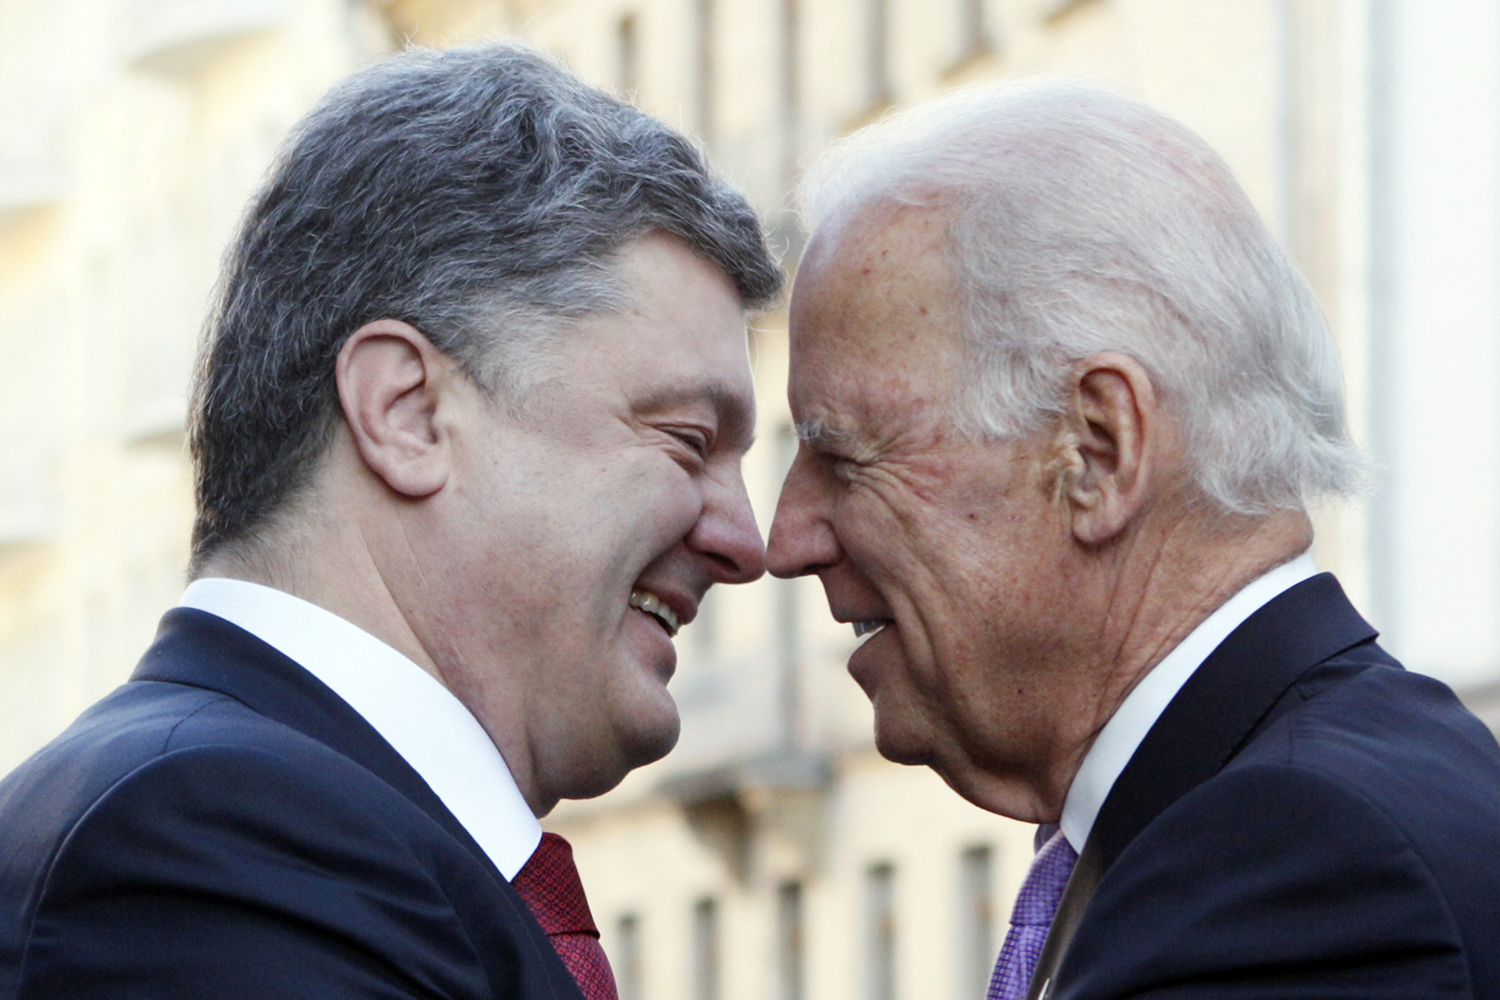 El vicepresidente de EE UU, Joe Biden, se reune con el presidente de Ucrania Petro Poroshenko